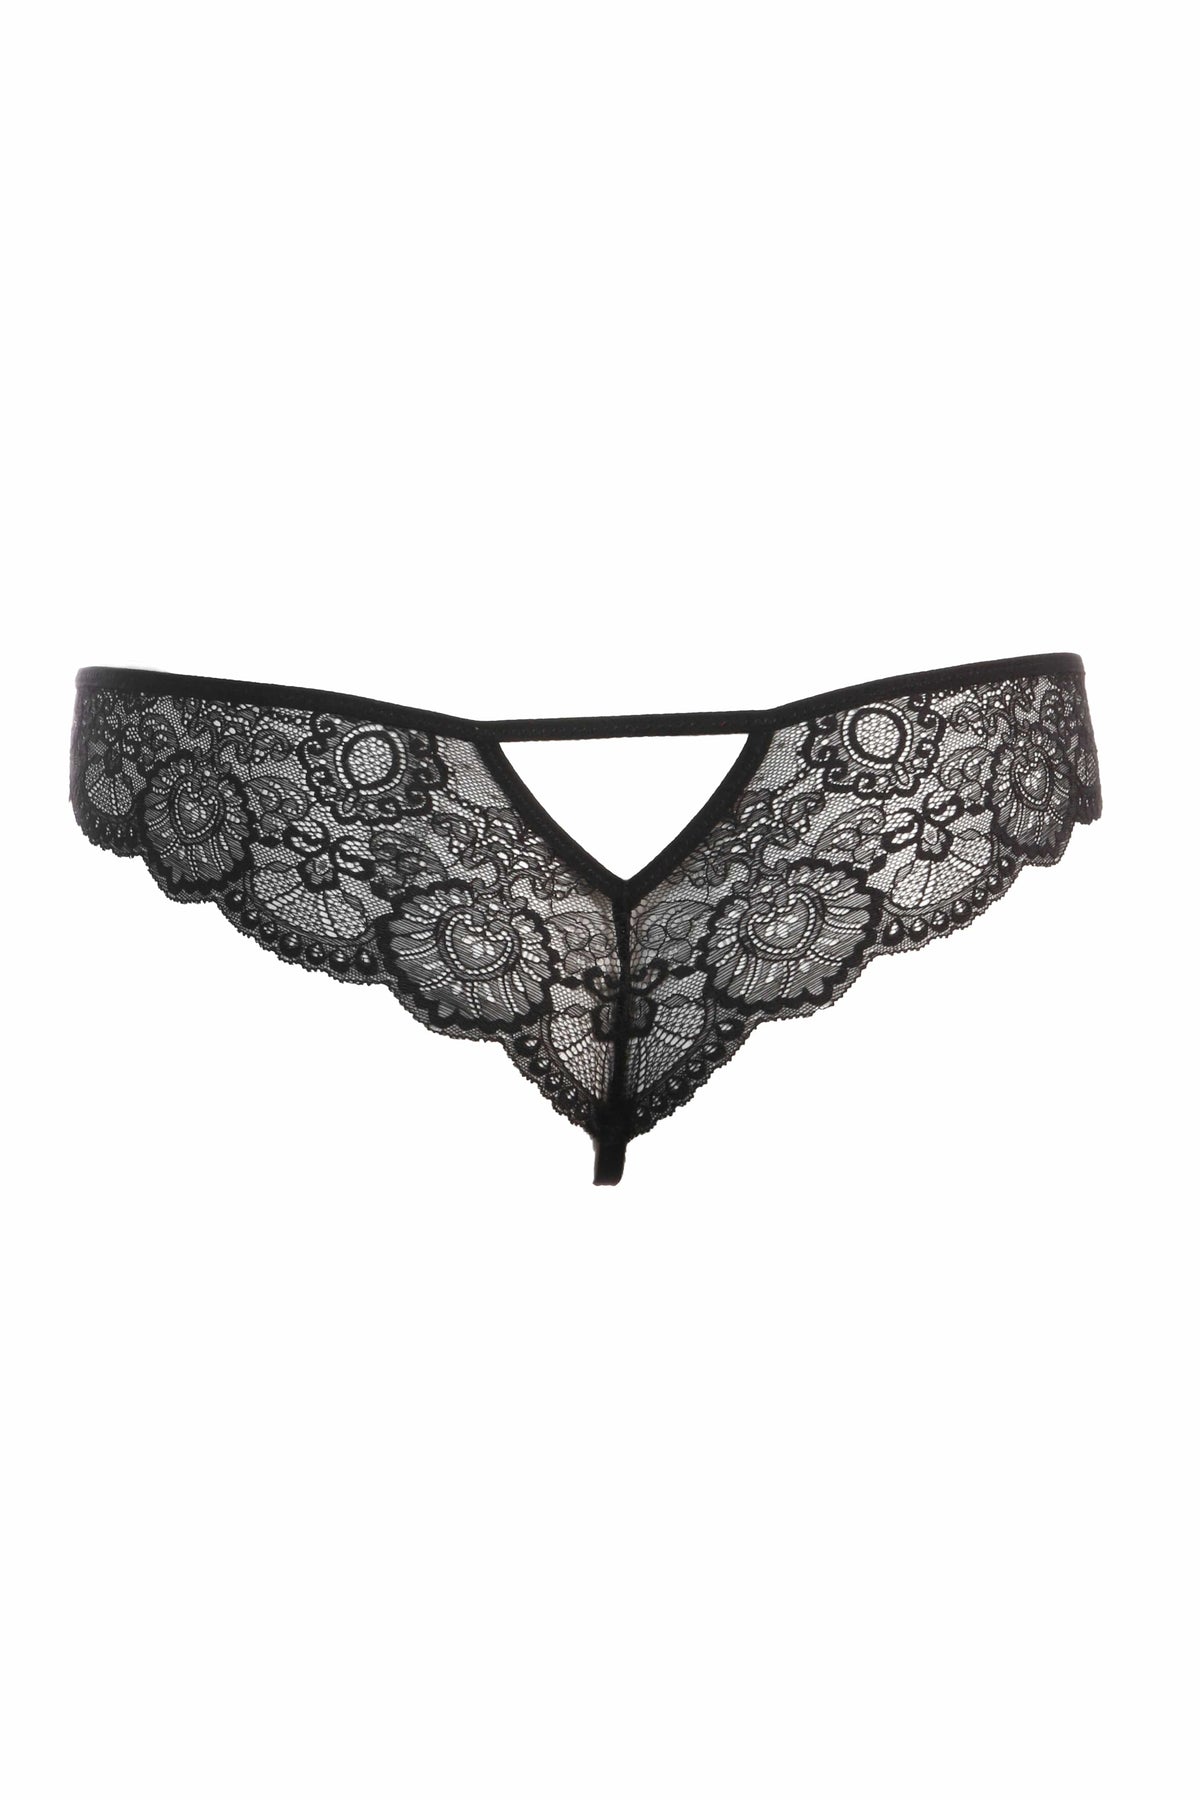 Thistle &amp; Spire Underwear Brighton Thong- Black